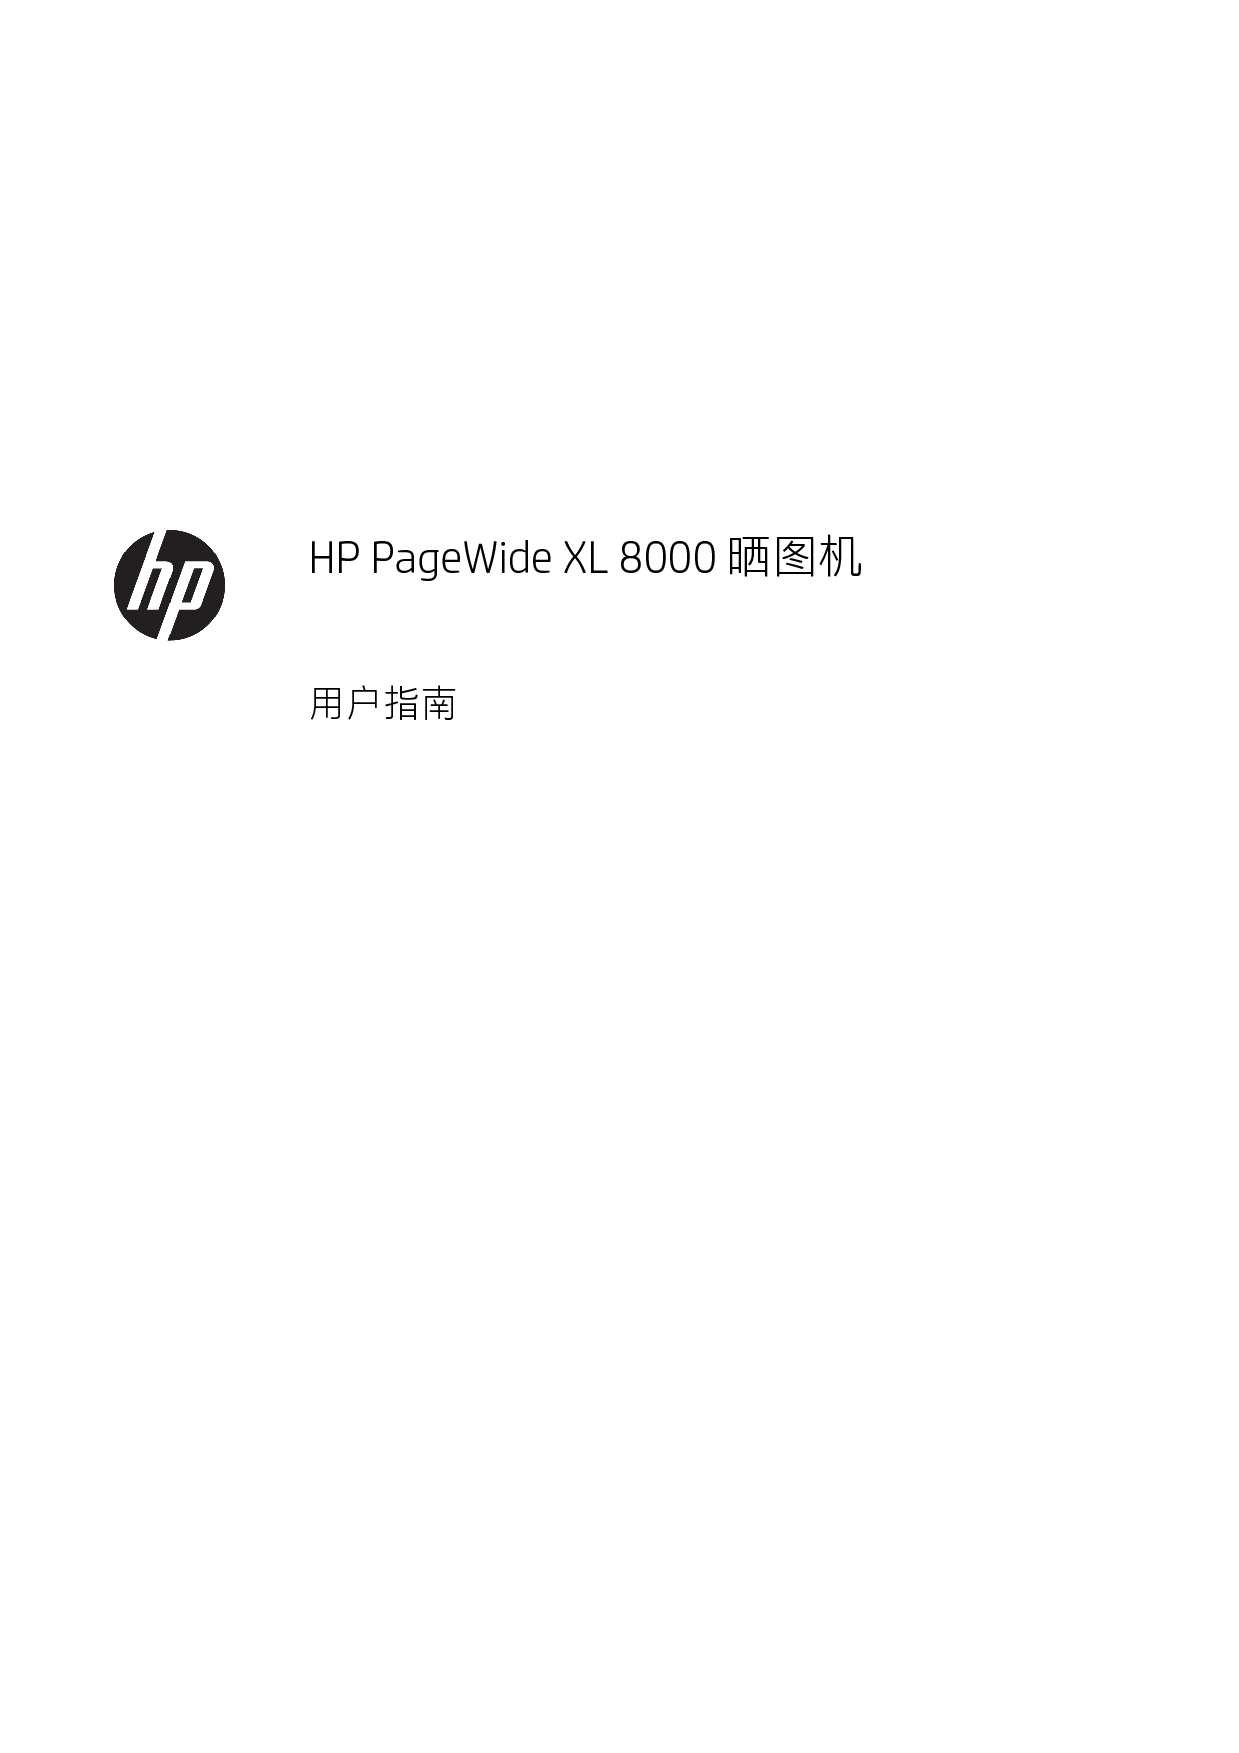 惠普 HP PageWide XL 8000 晒图机 用户指南 封面